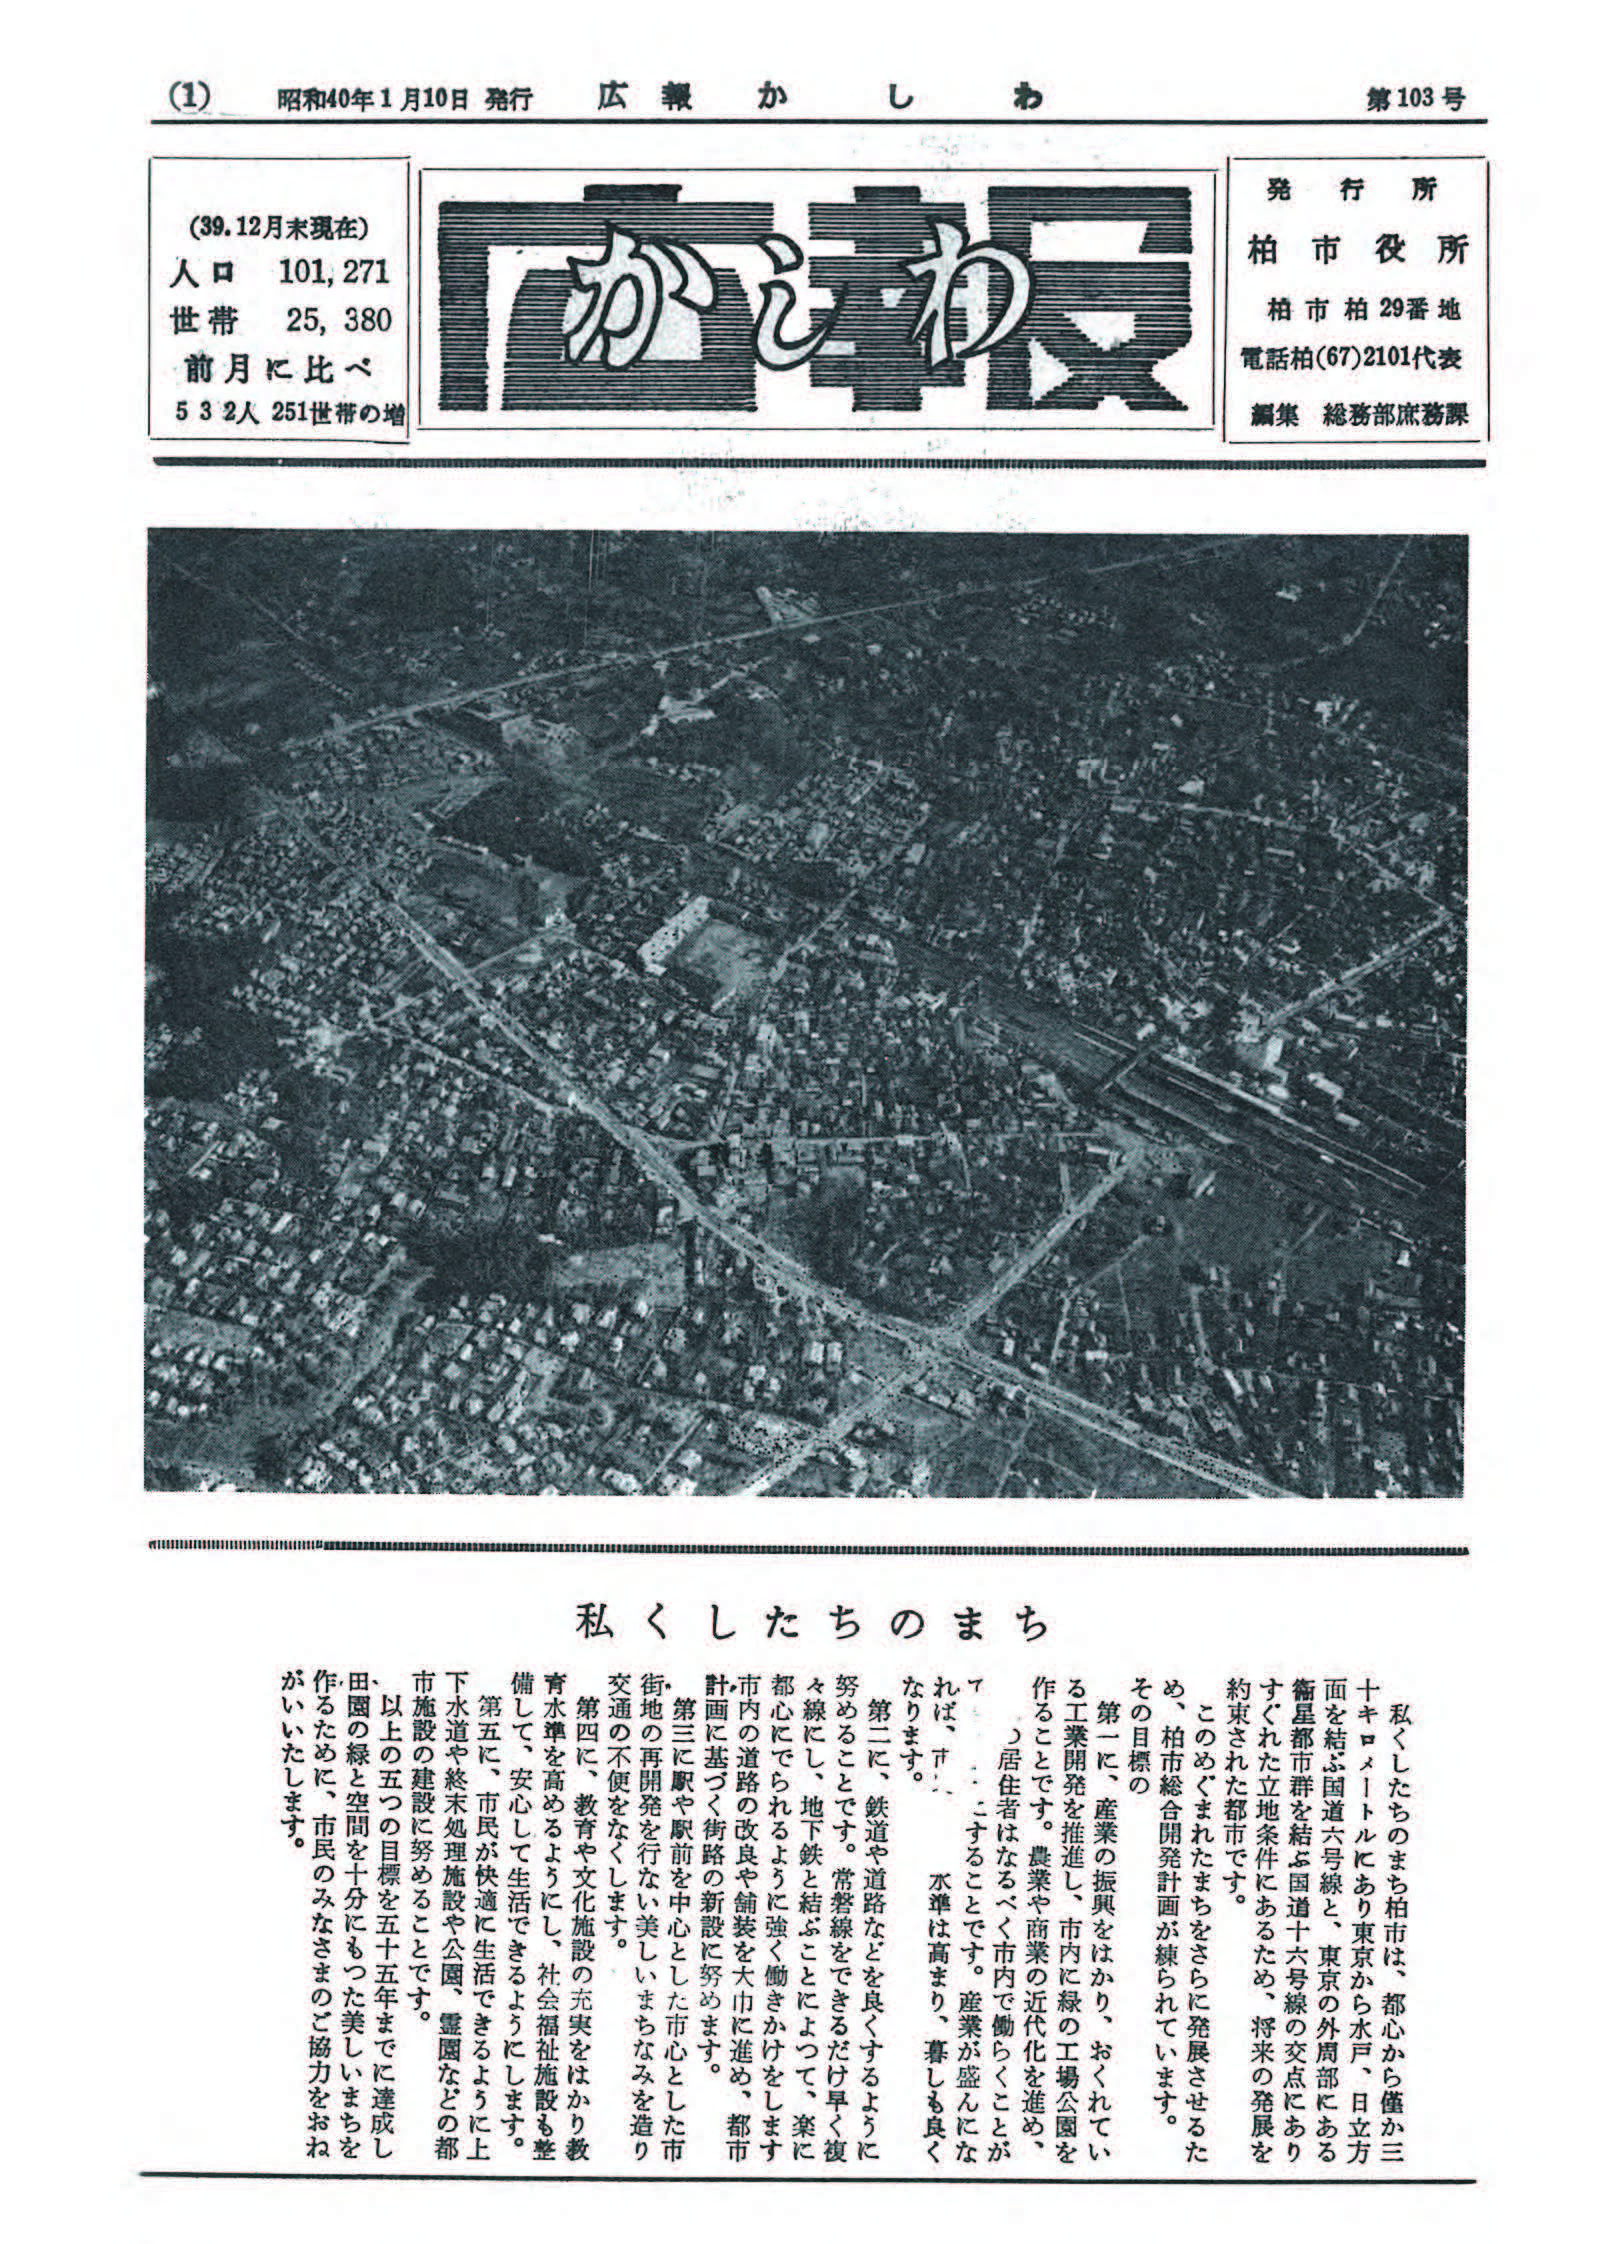 広報かしわ　昭和40年1月10日発行　103号